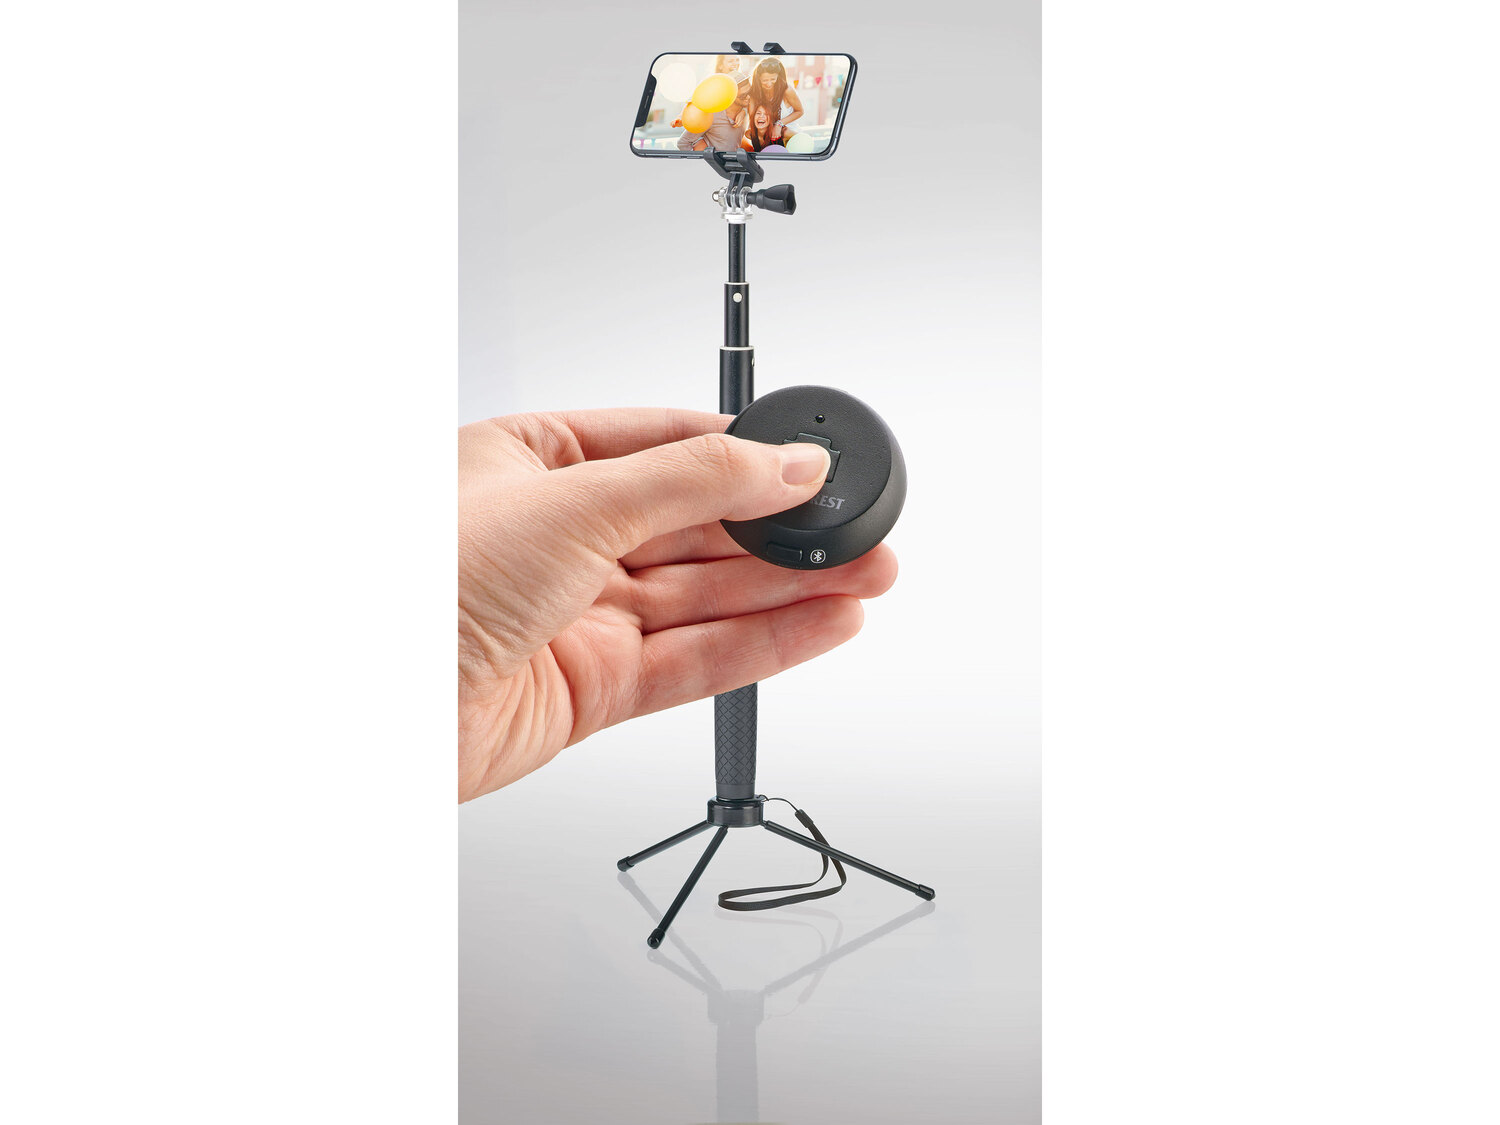 Kij do selfie z Bluetooth® Silvercrest, cena 54,90 PLN 
- zdalny wyzwalacz
- ...